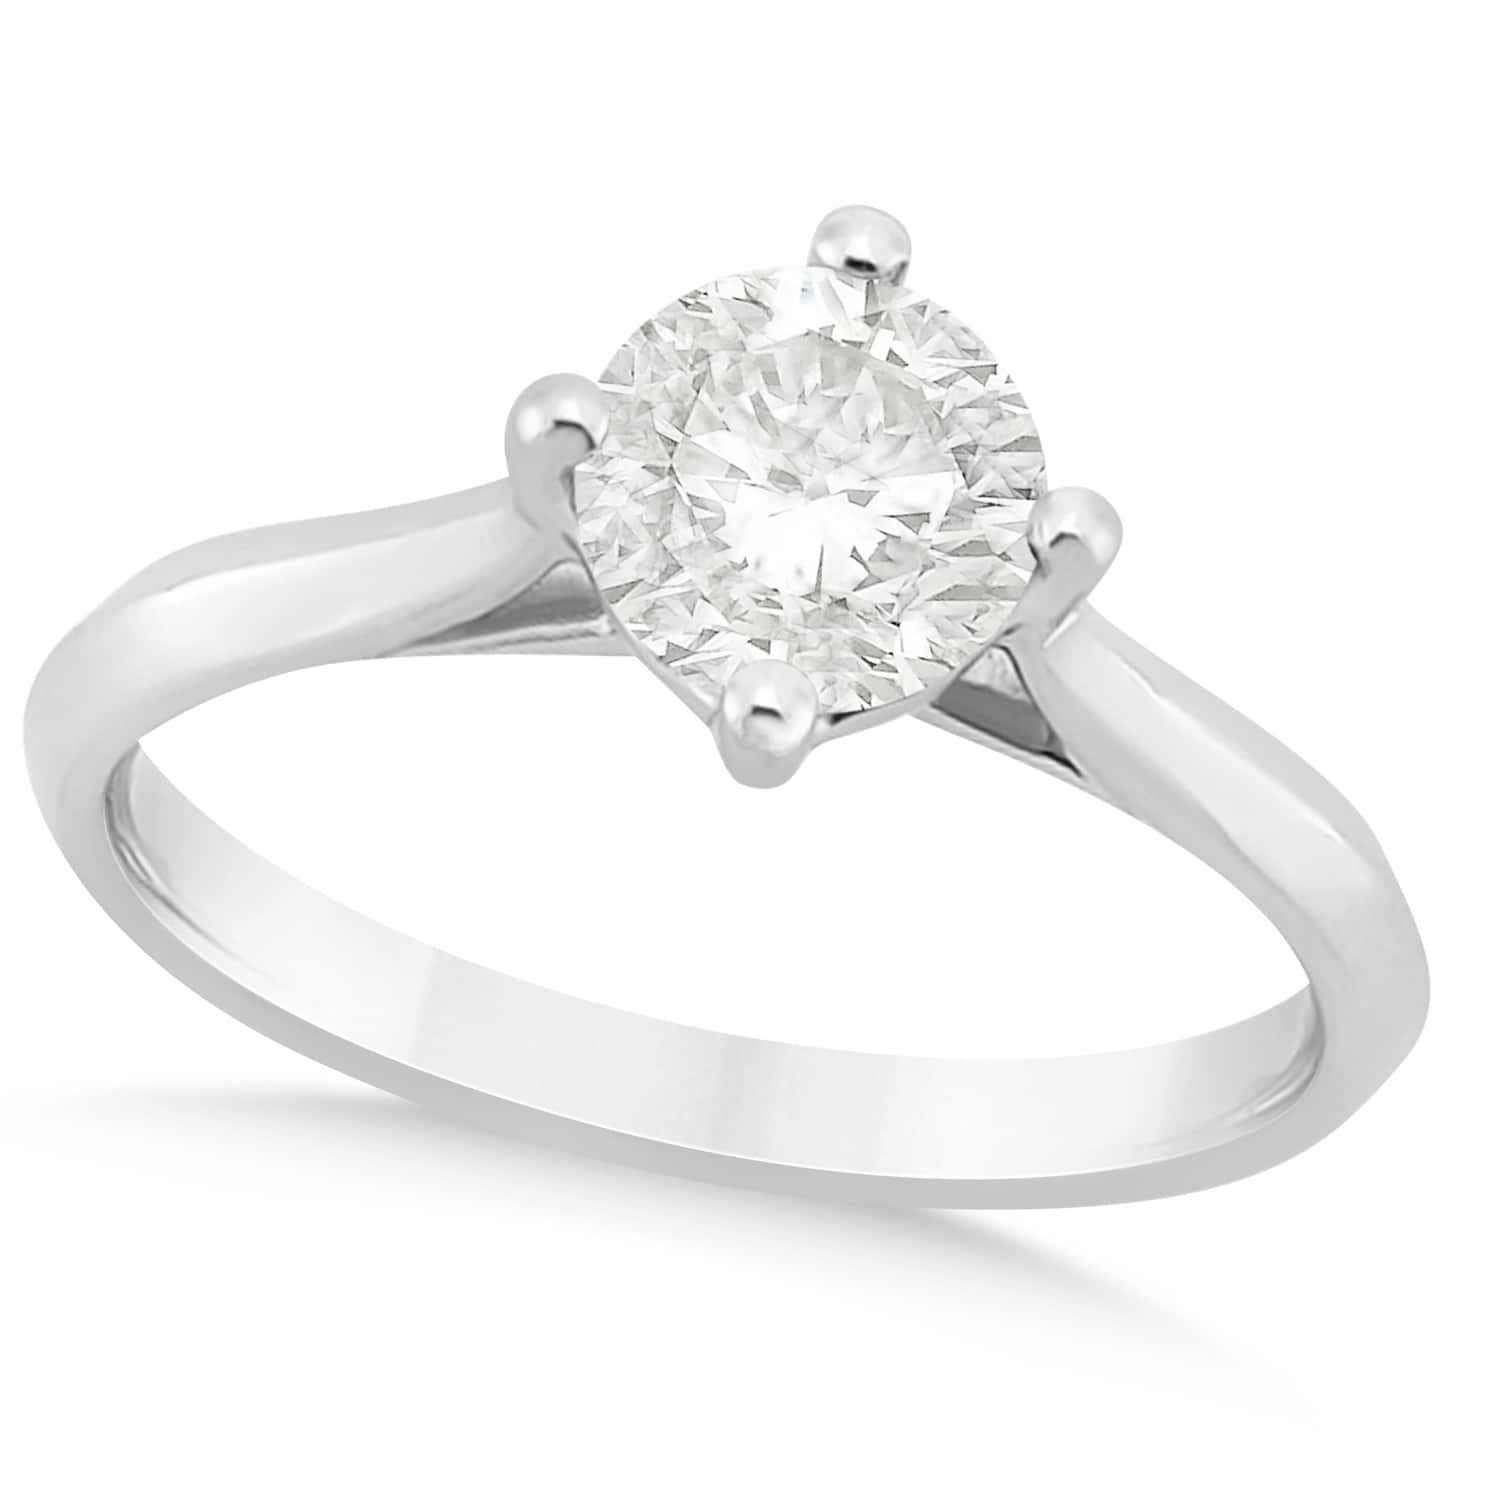 Round Solitaire Diamond Engagement Ring Platinum 1.00ct